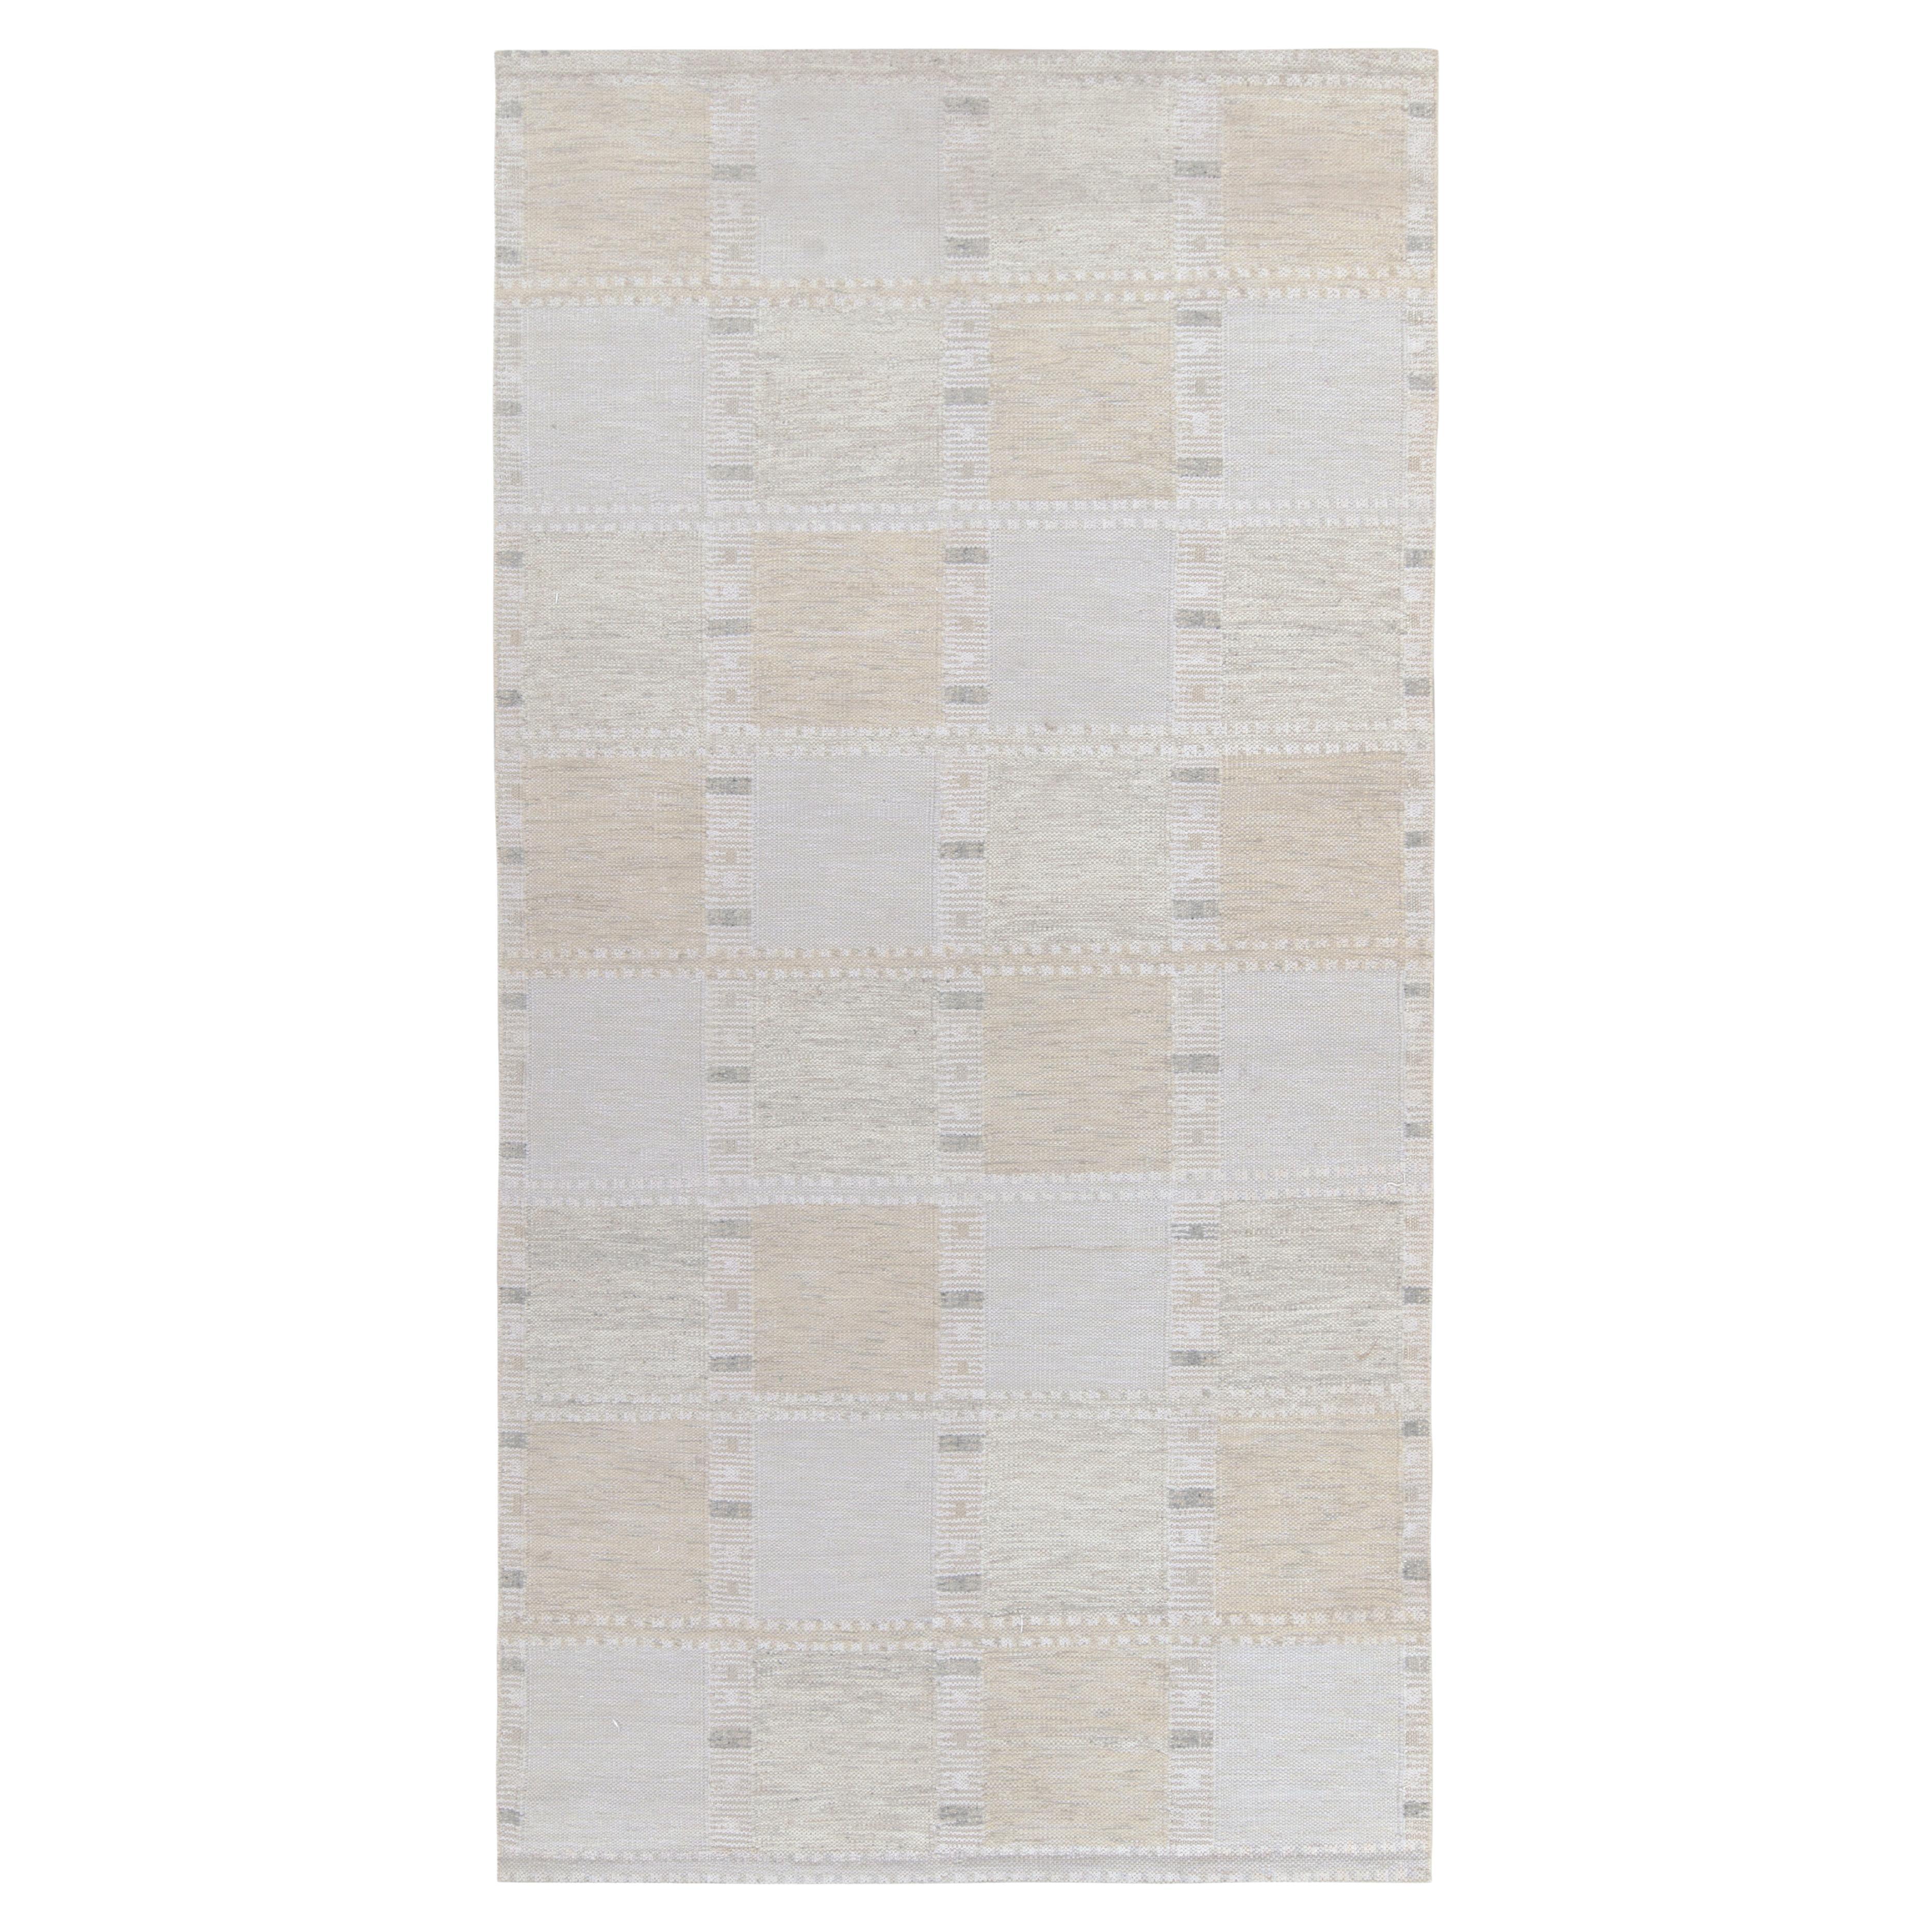 Teppich & Kelim-Teppich im skandinavischen Stil in Weiß, Grau mit geometrischem Muster